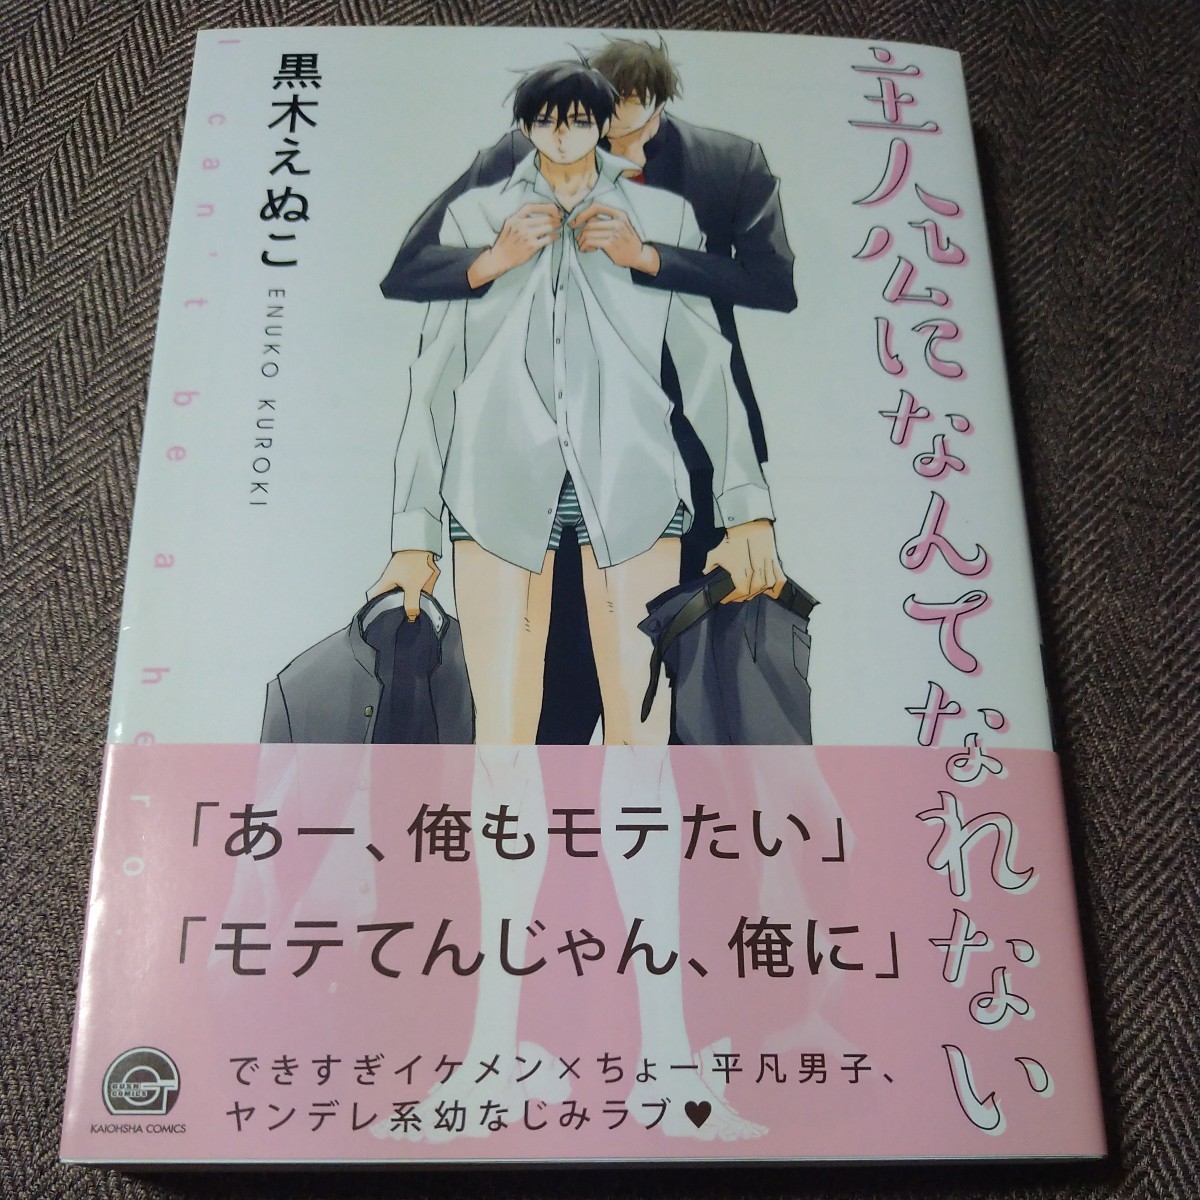 Un libro firmado con ilustraciones No puedo ser el personaje principal de Enuko Kuroki, Cómics BL, Libro, revista, historietas, Historietas, Chicos les encanta